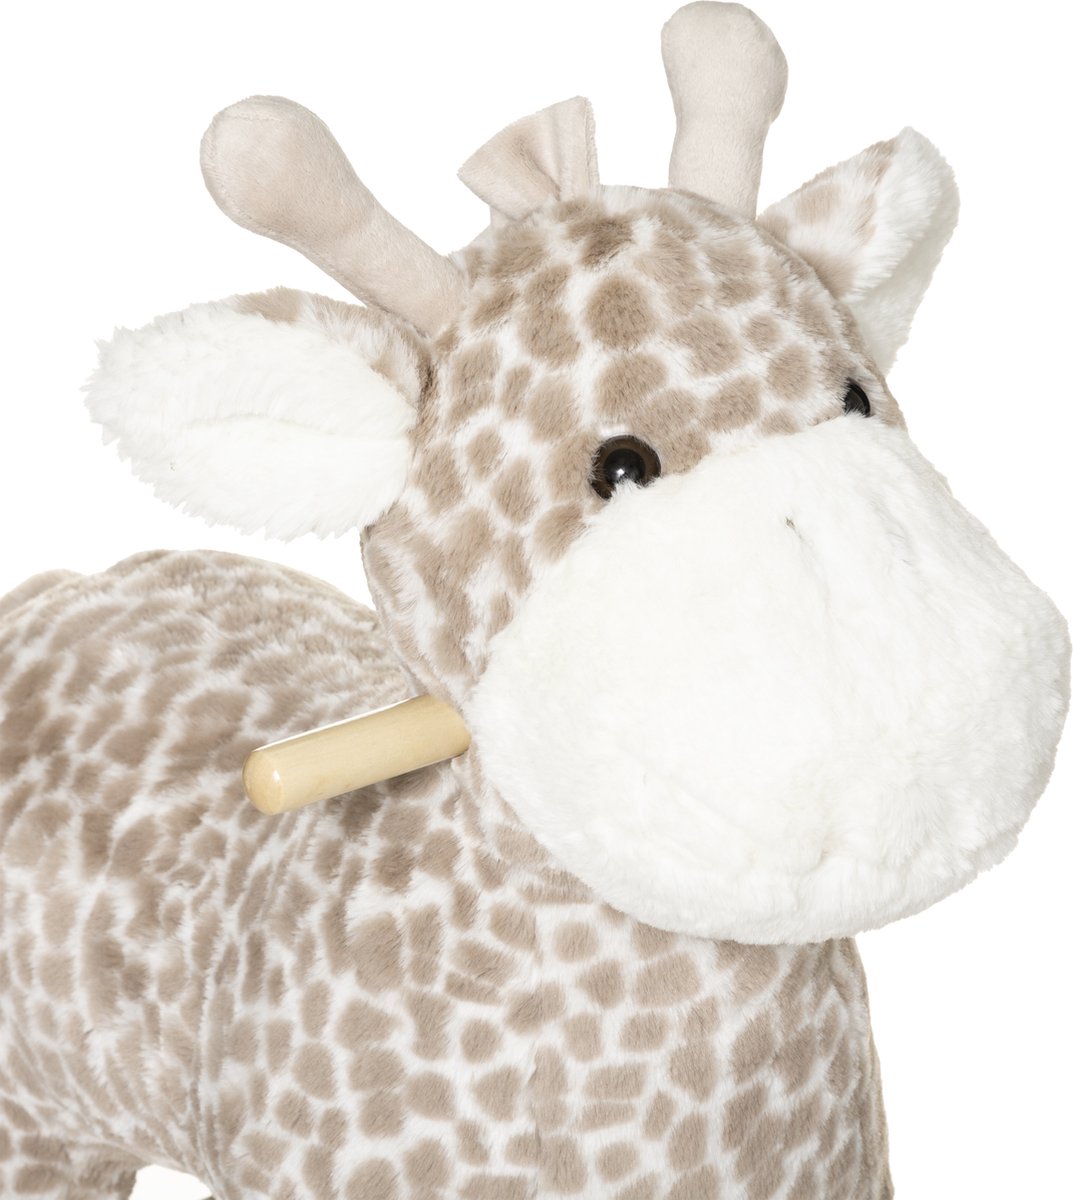 Schommelpaard - Giraffe - Bruin - 64 x 55 x 33 cm - Schommeldier